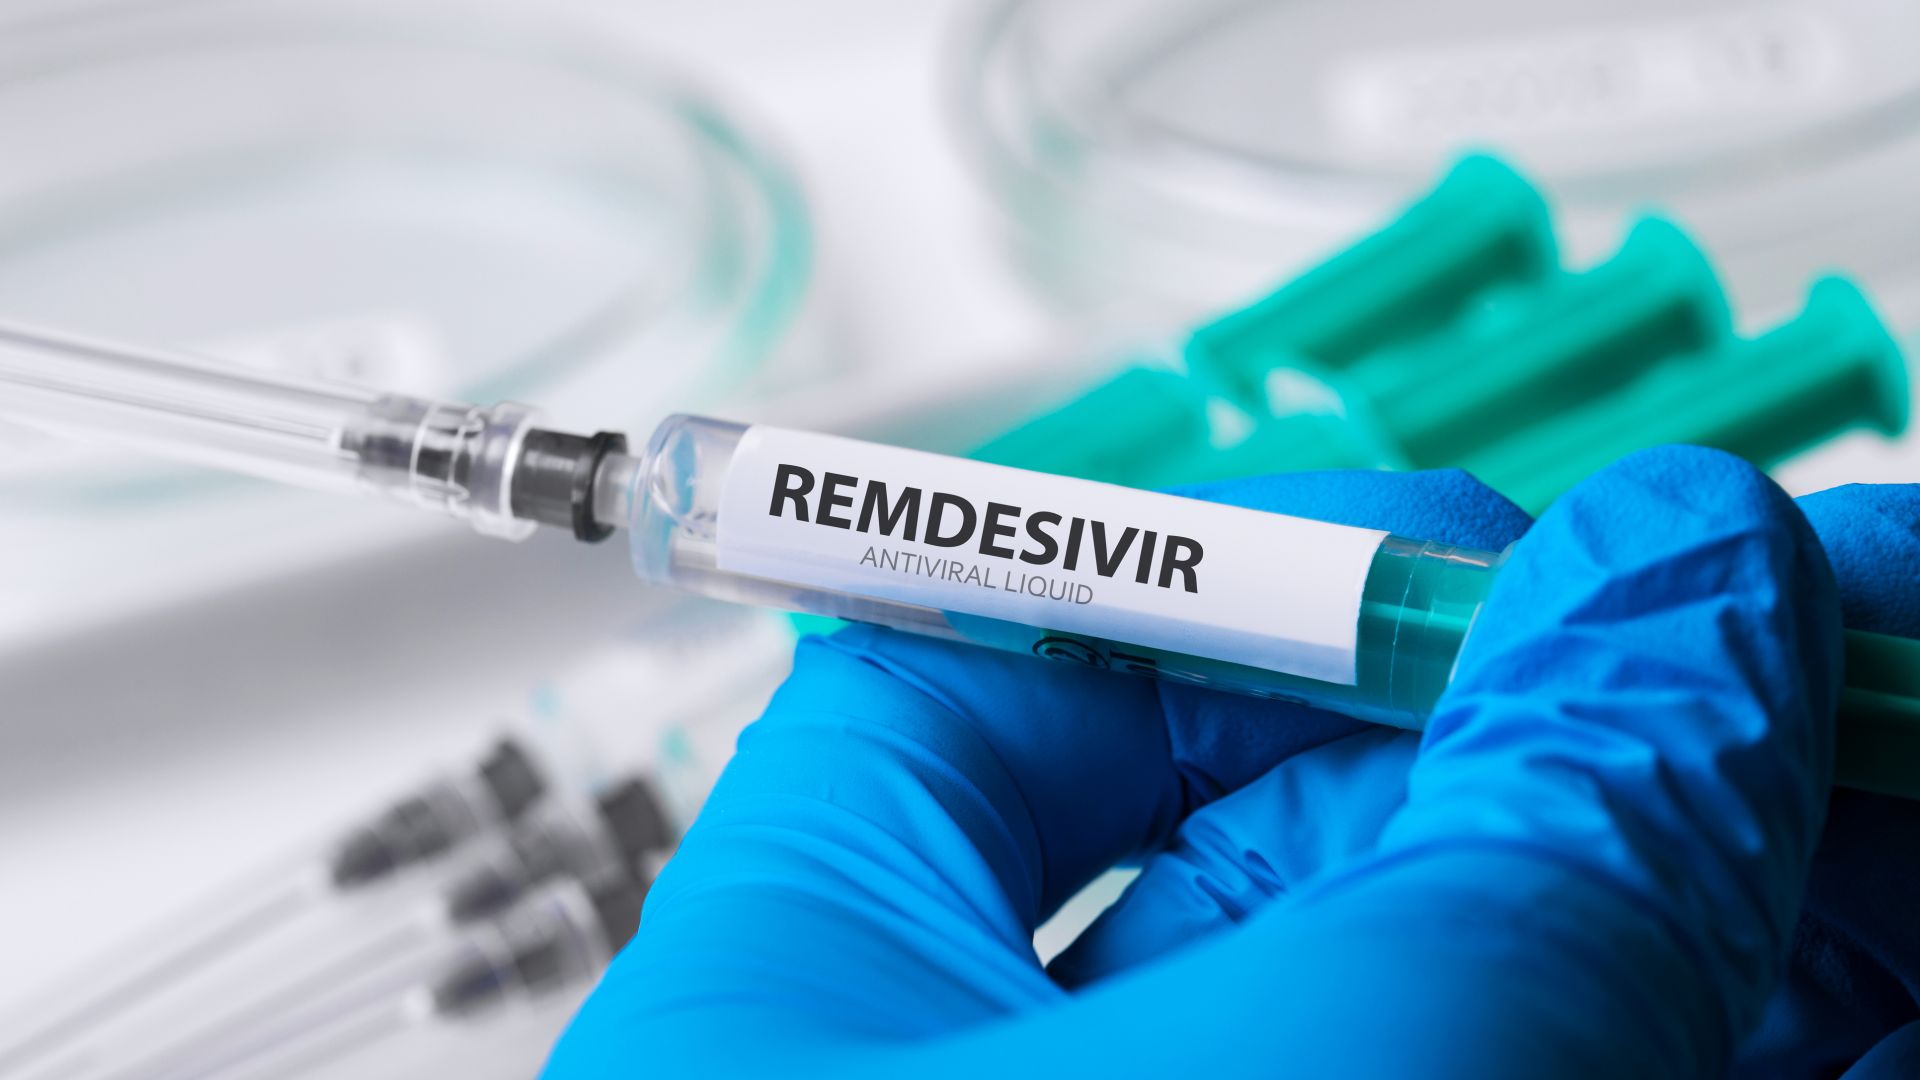 САЩ изкупи световните запаси от "Ремдесивир" за лечението на COVID-19